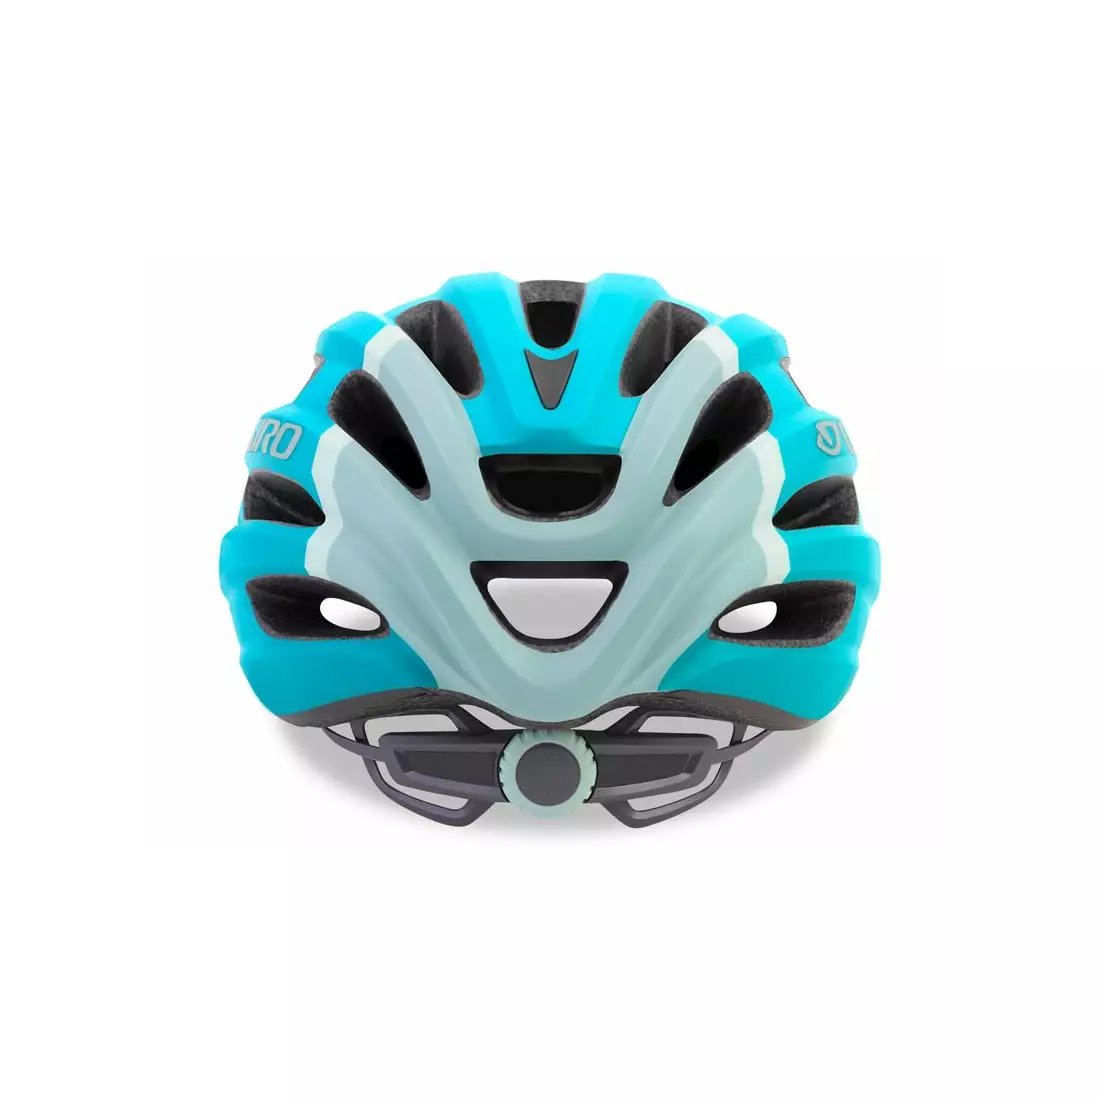 GIRO Children's bicycle helmet HALE matte glacier GR-7089365